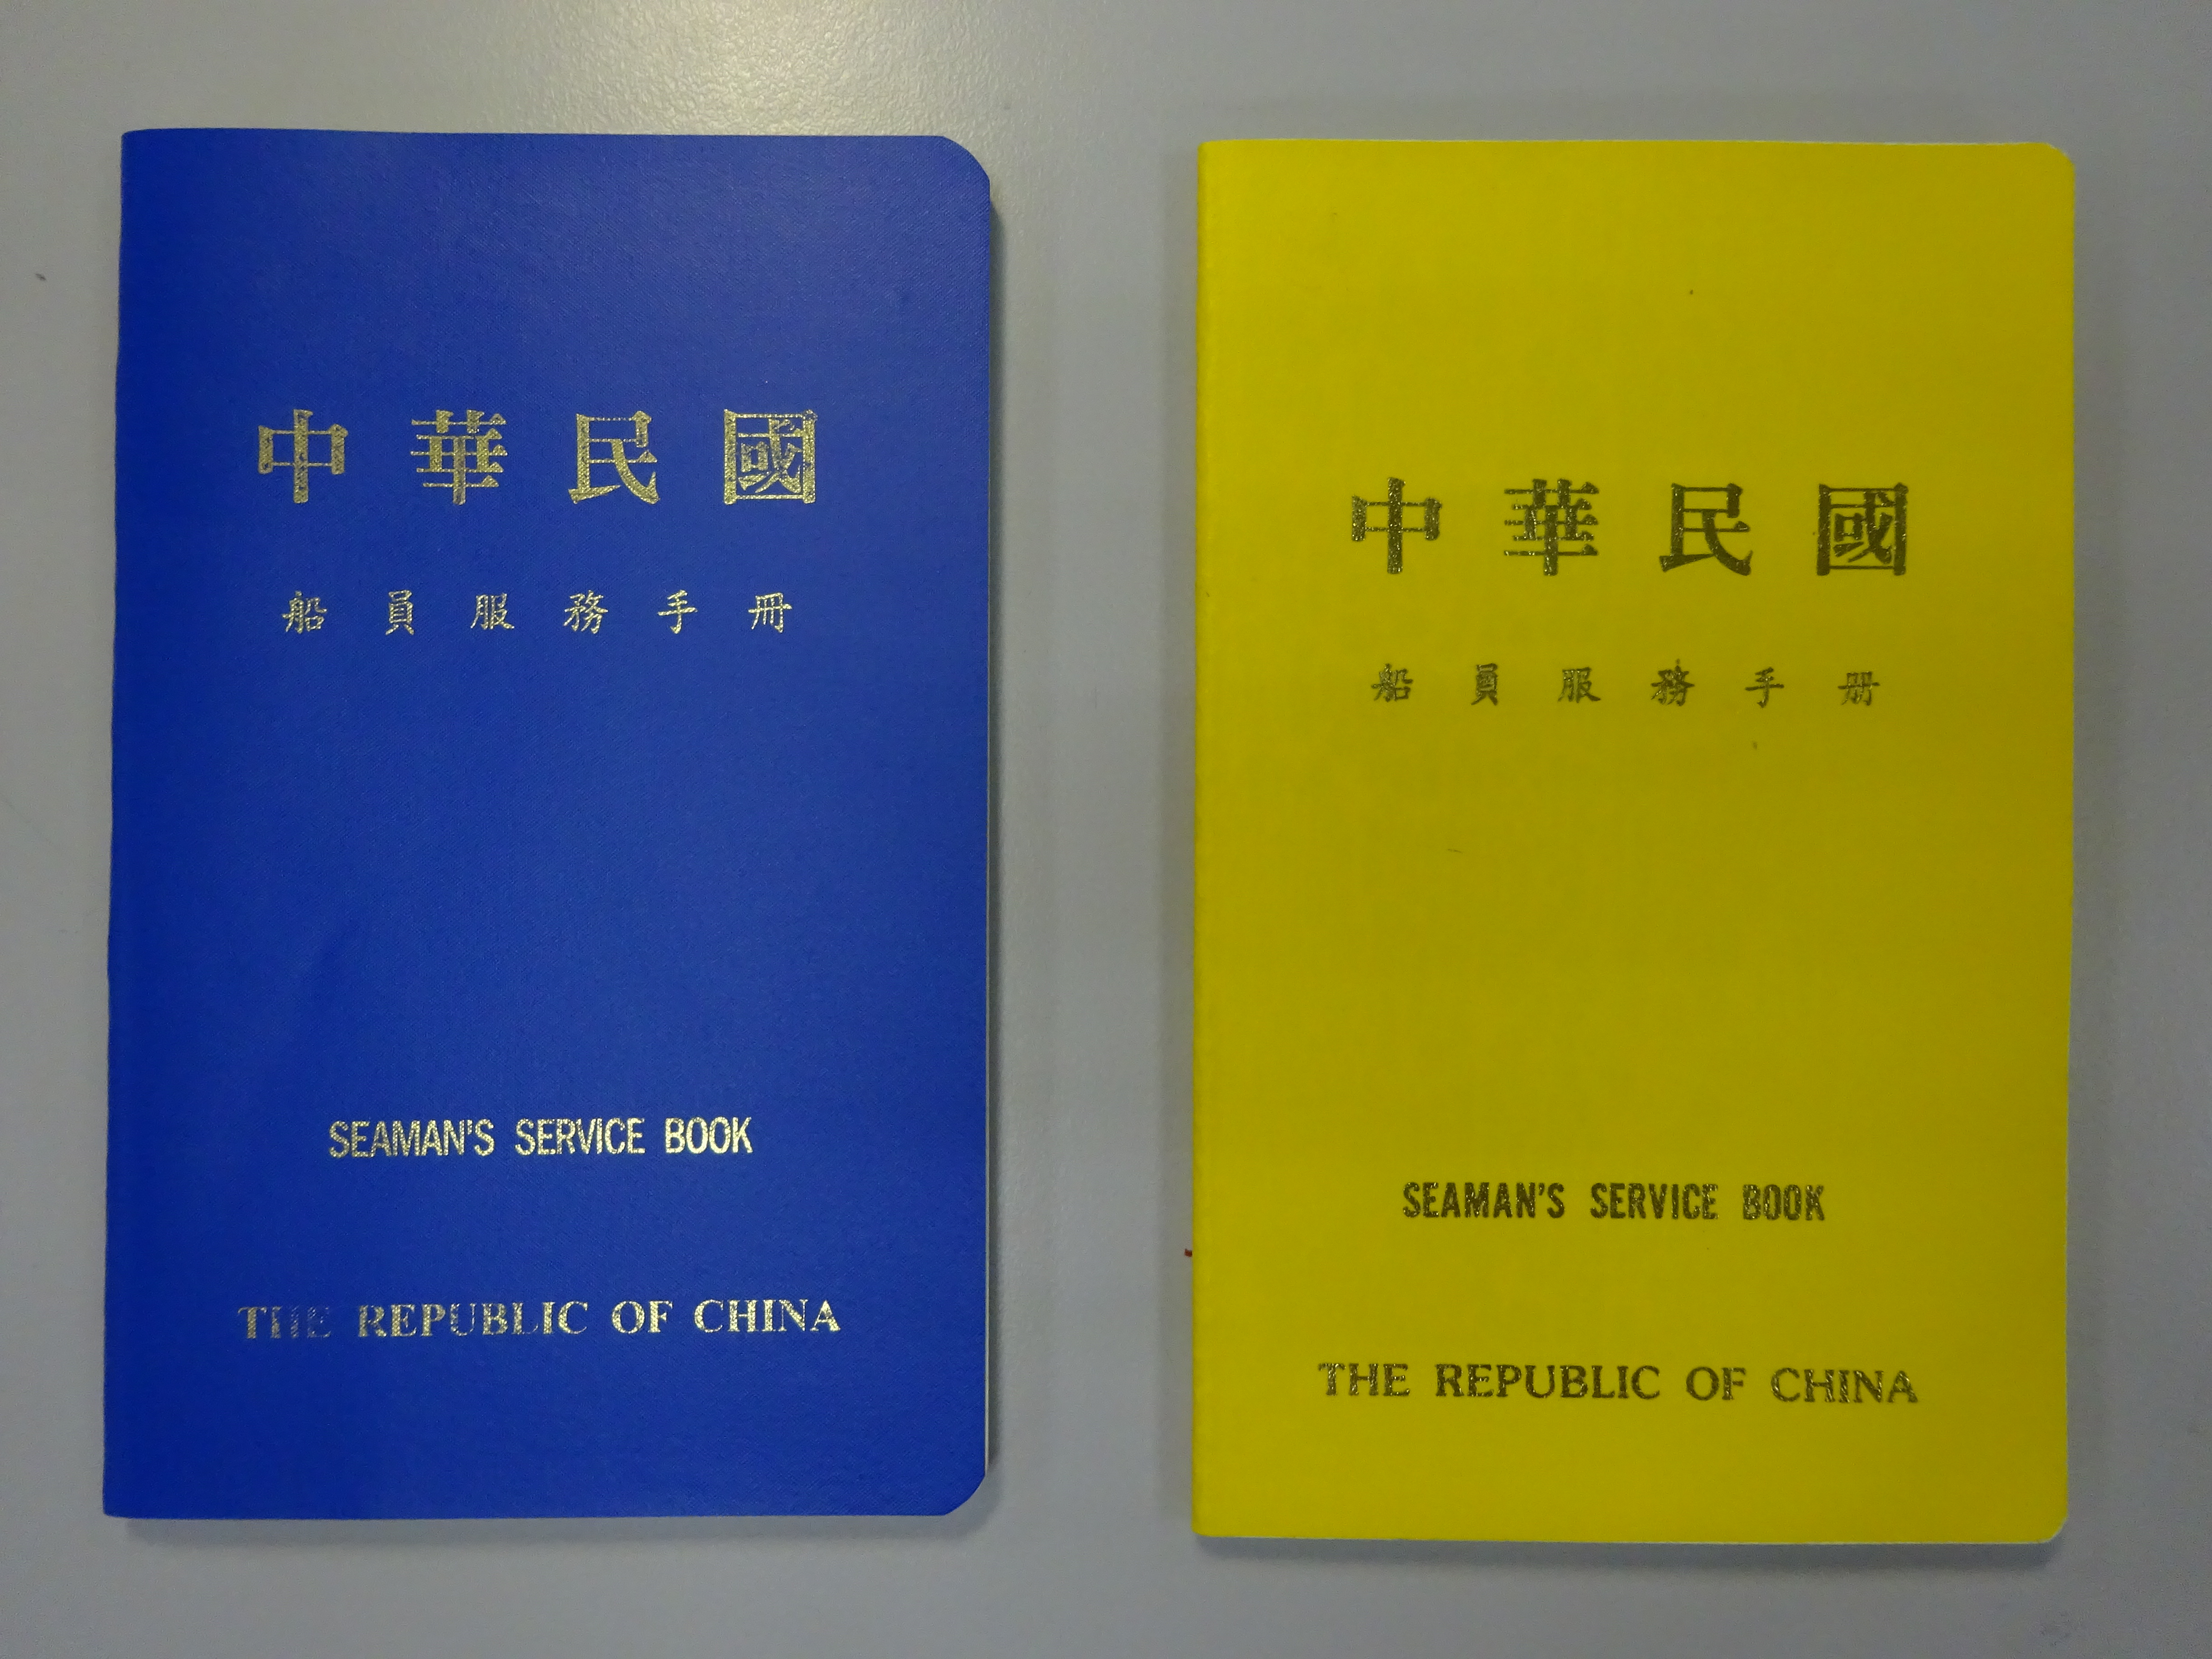 舊版船員服務手冊自民國77年發行使用，至104年2月換發新版船員服務手冊